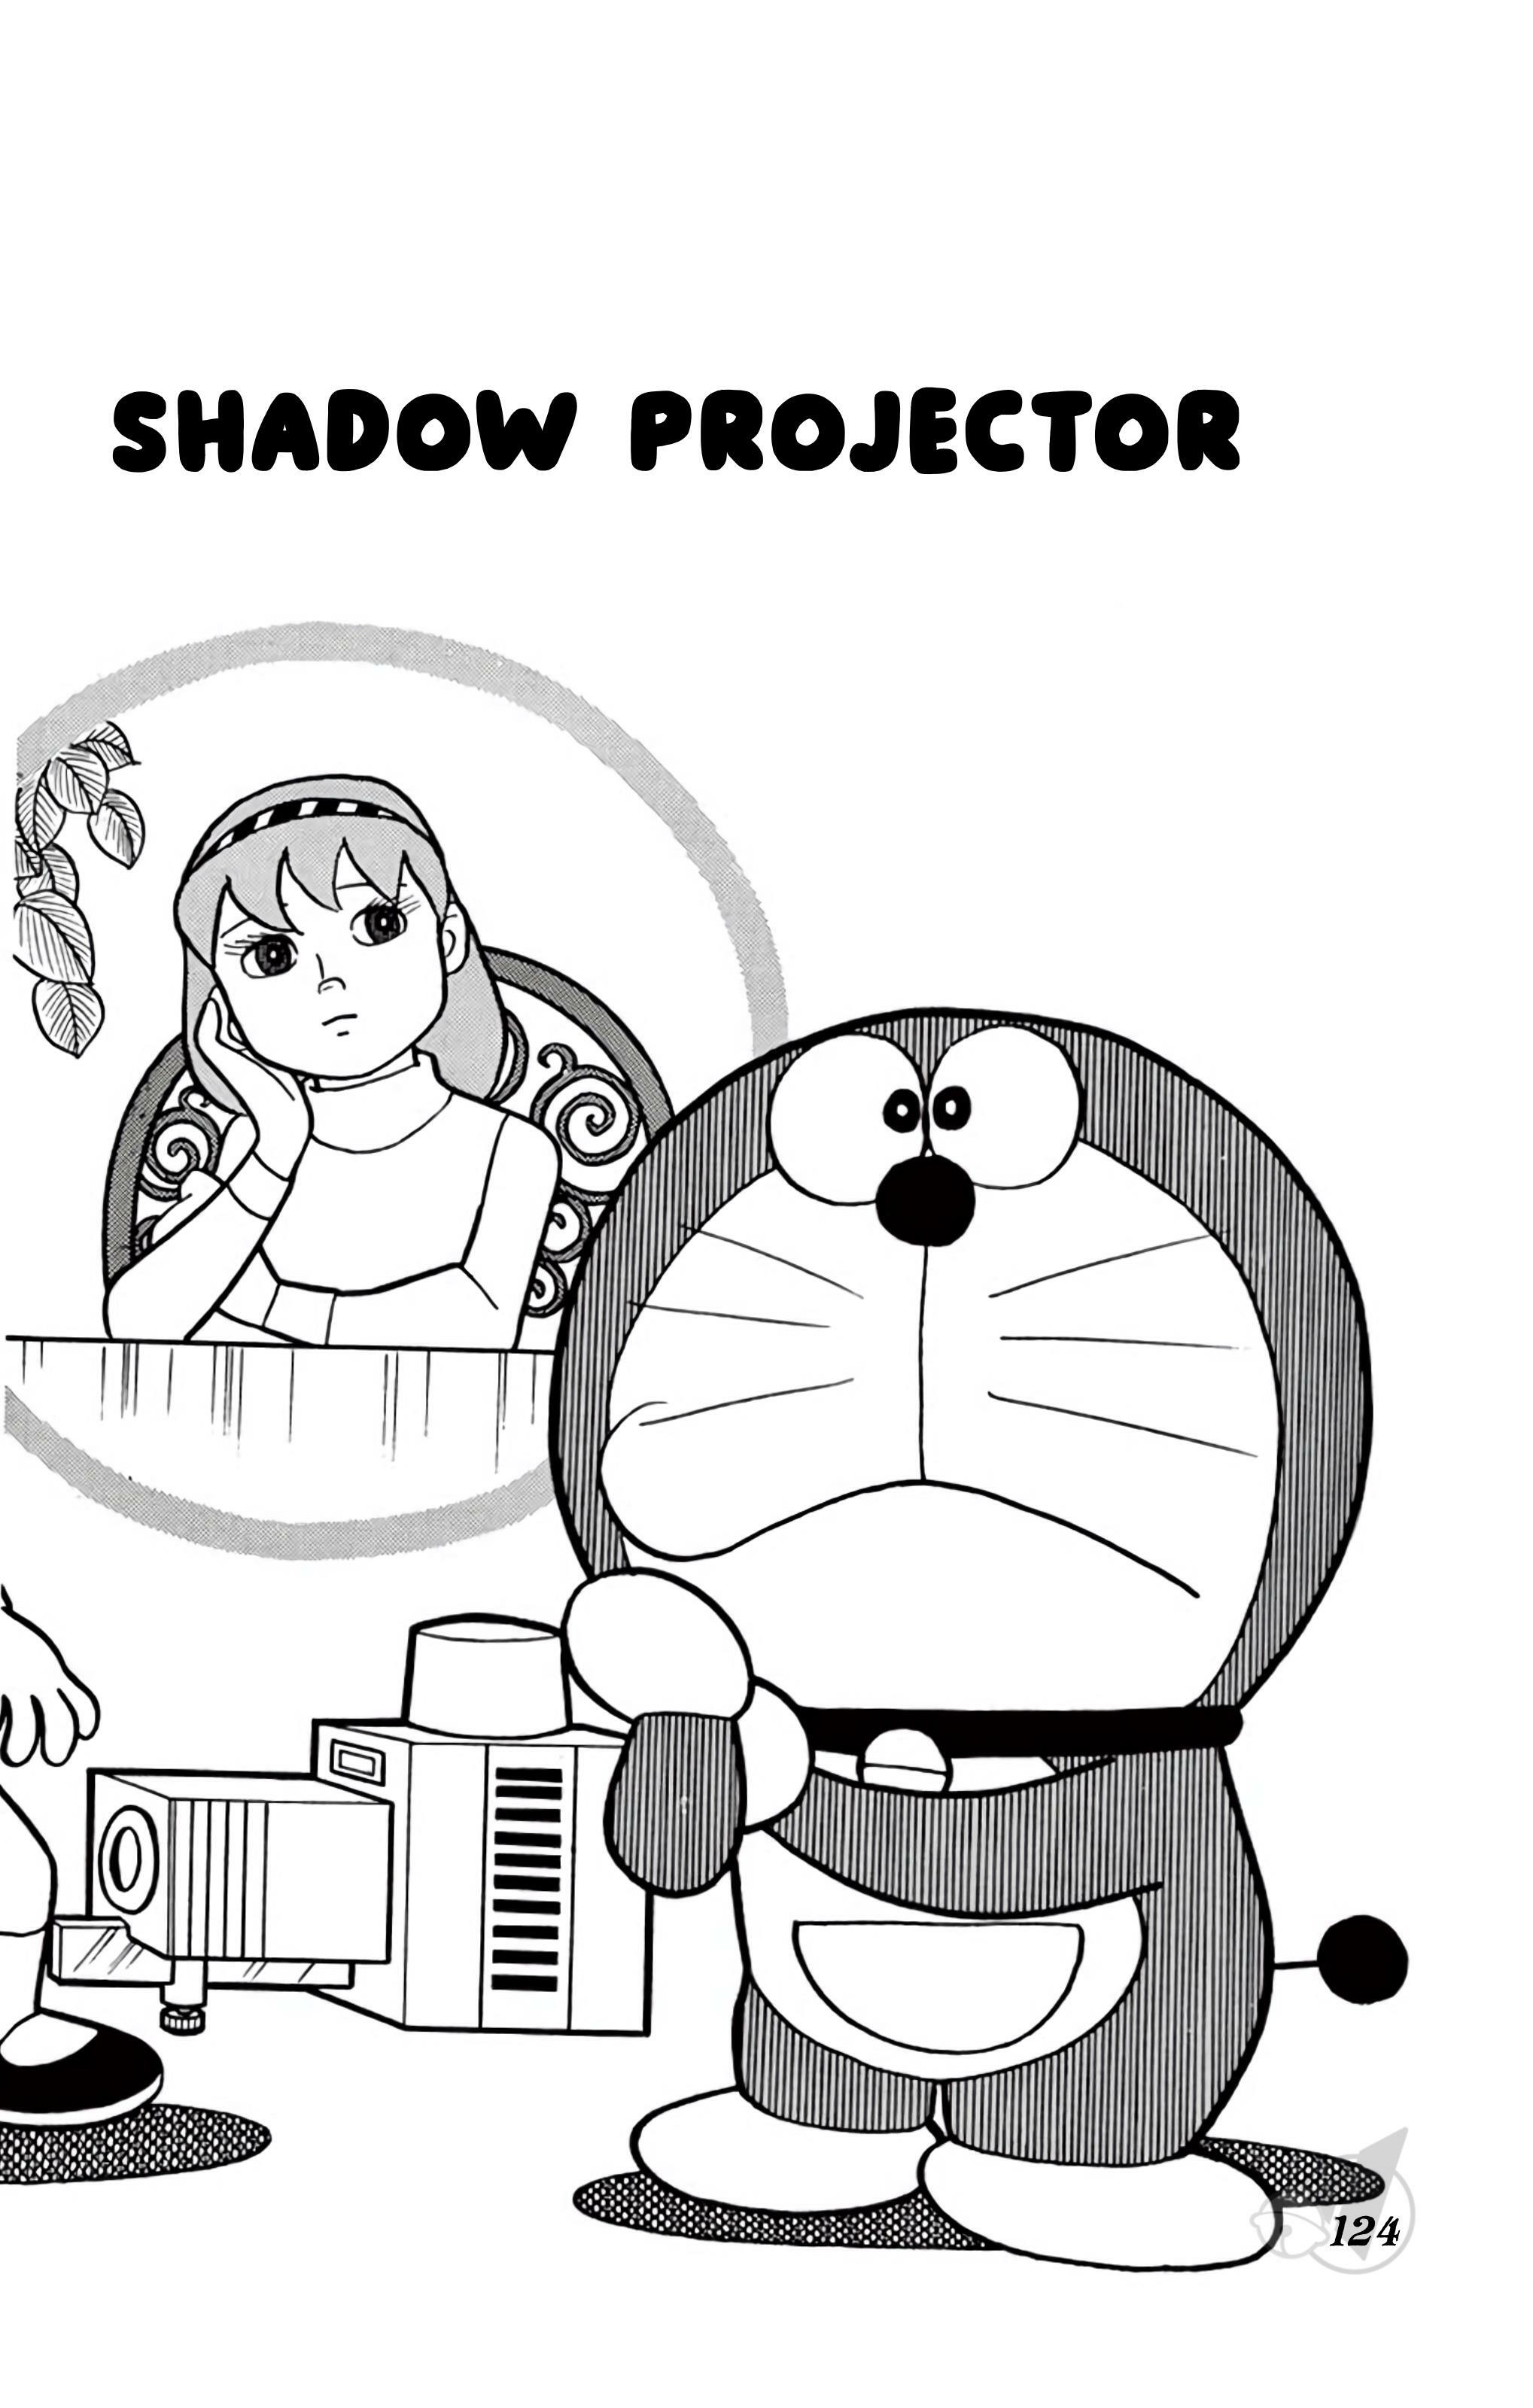 Read Doraemon Vol.13 Chapter 241: Passport Of Satan on Mangakakalot